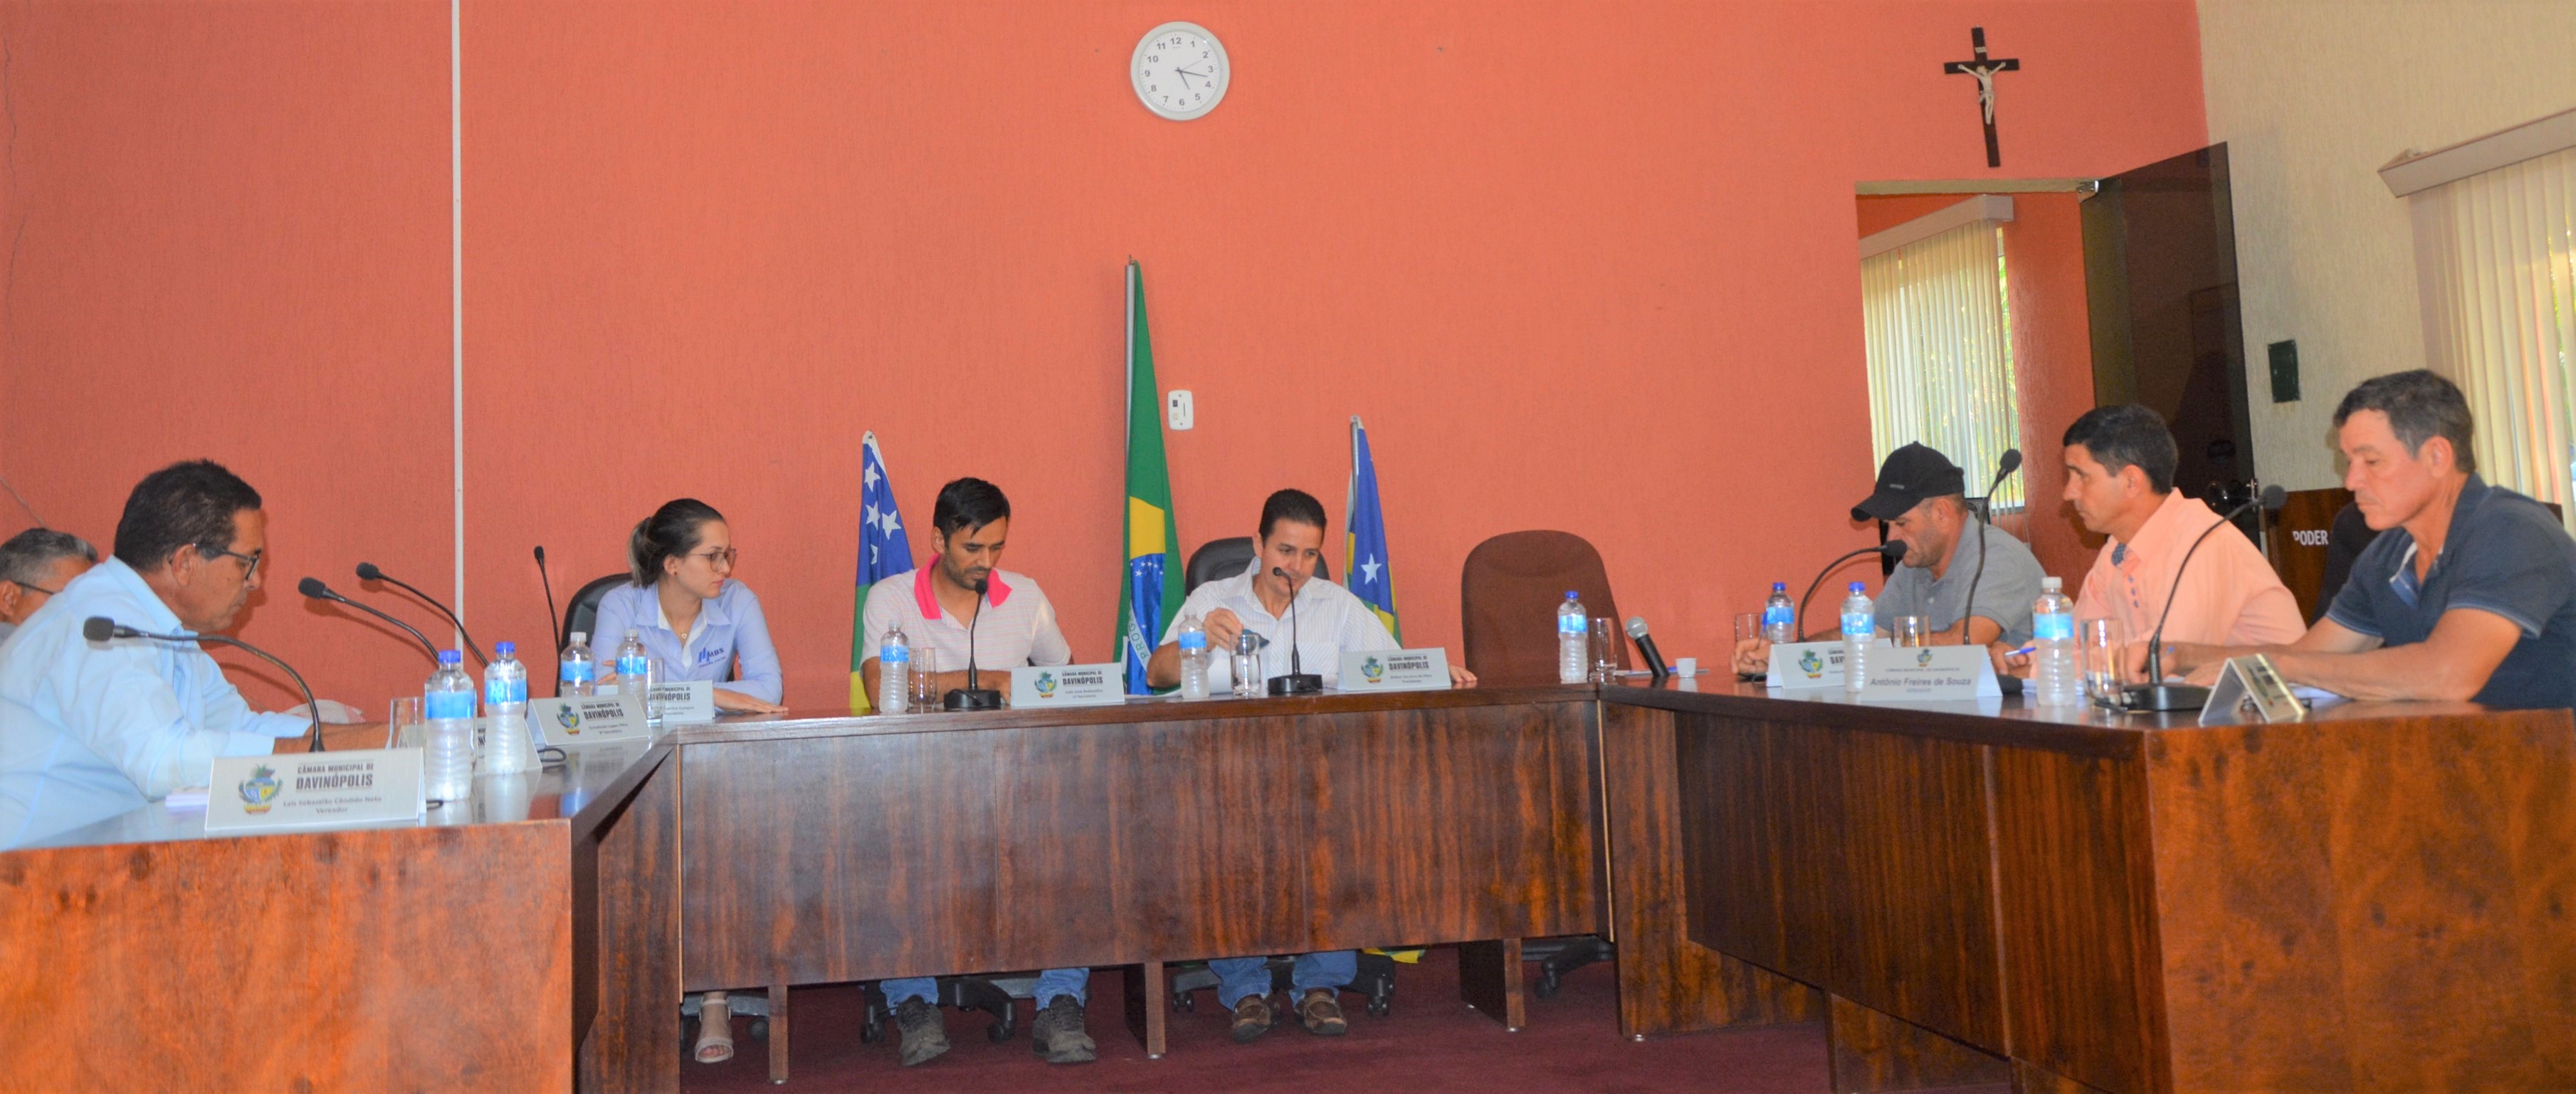 Plenário da Câmara de Vereadores de Davinópolis. (Reprodução/Arquivo)